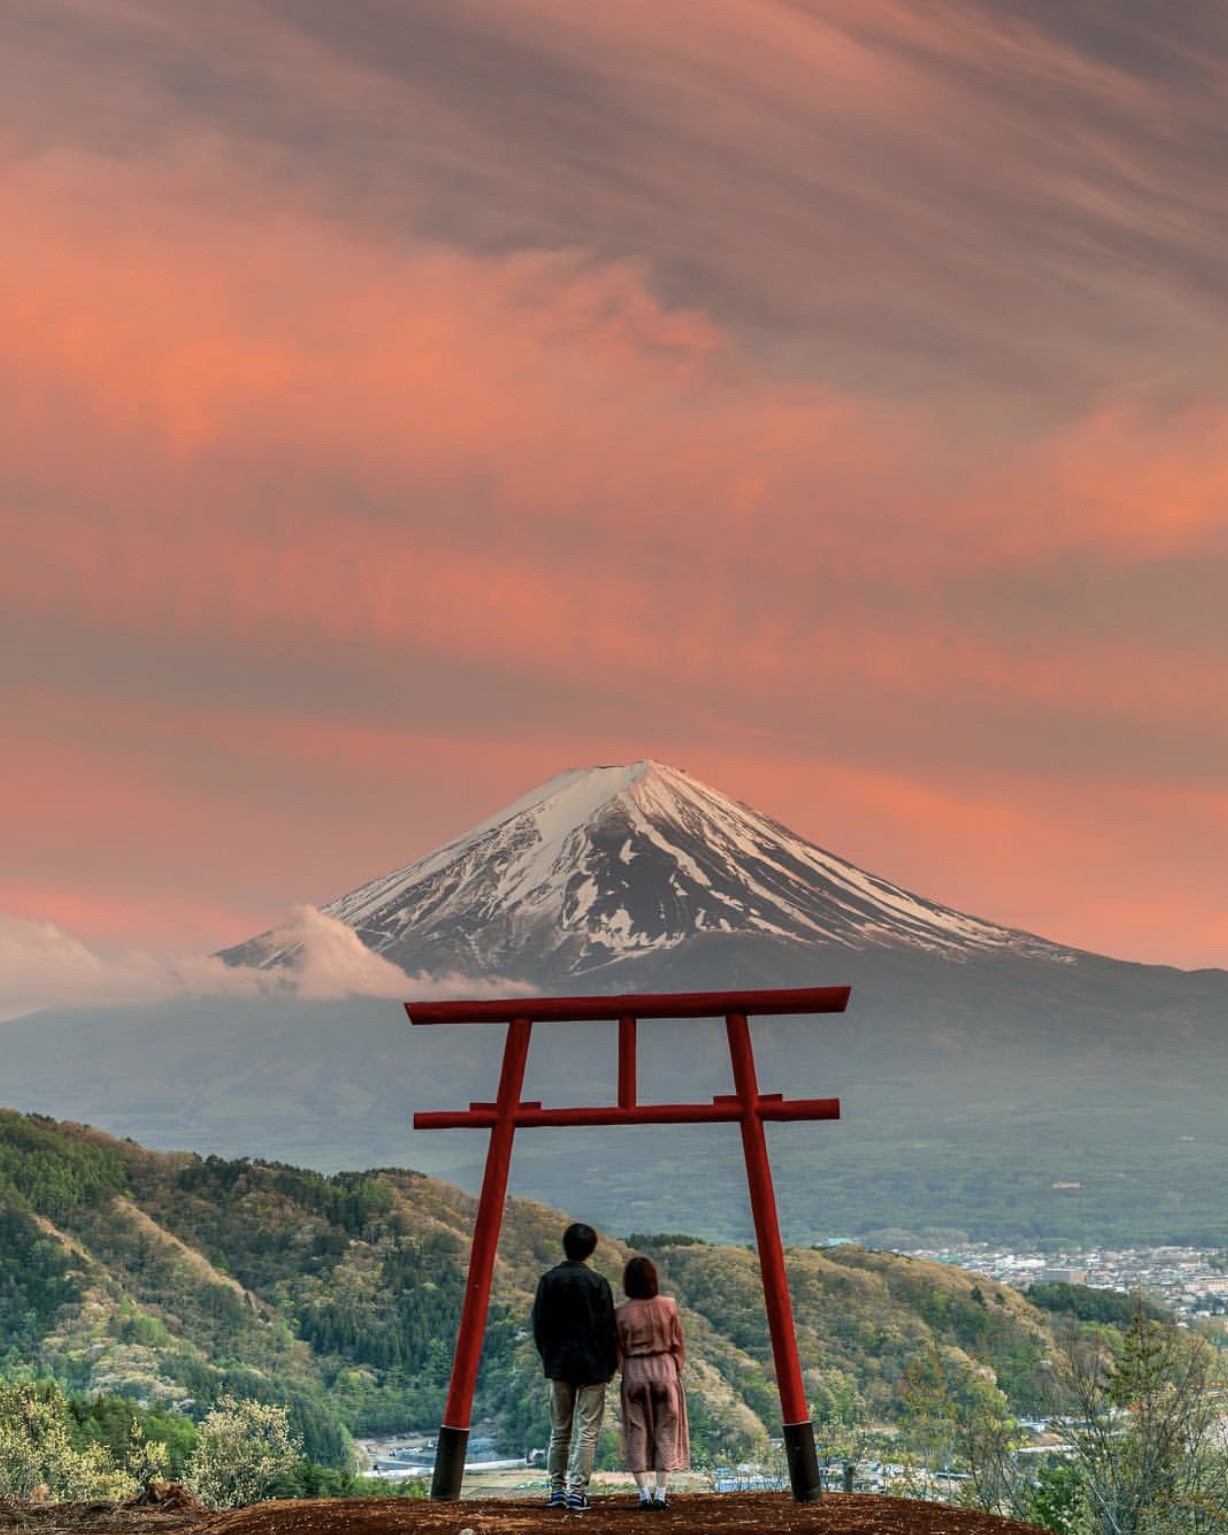 Hình vẽ núi phú sĩ: Vẽ núi Phú Sĩ là một trong những cách tuyệt vời để thể hiện tình yêu và sự khao khát với nơi này. Bức vẽ của bạn sẽ thể hiện được sự tinh tế và sự độc đáo của núi Phú Sĩ.